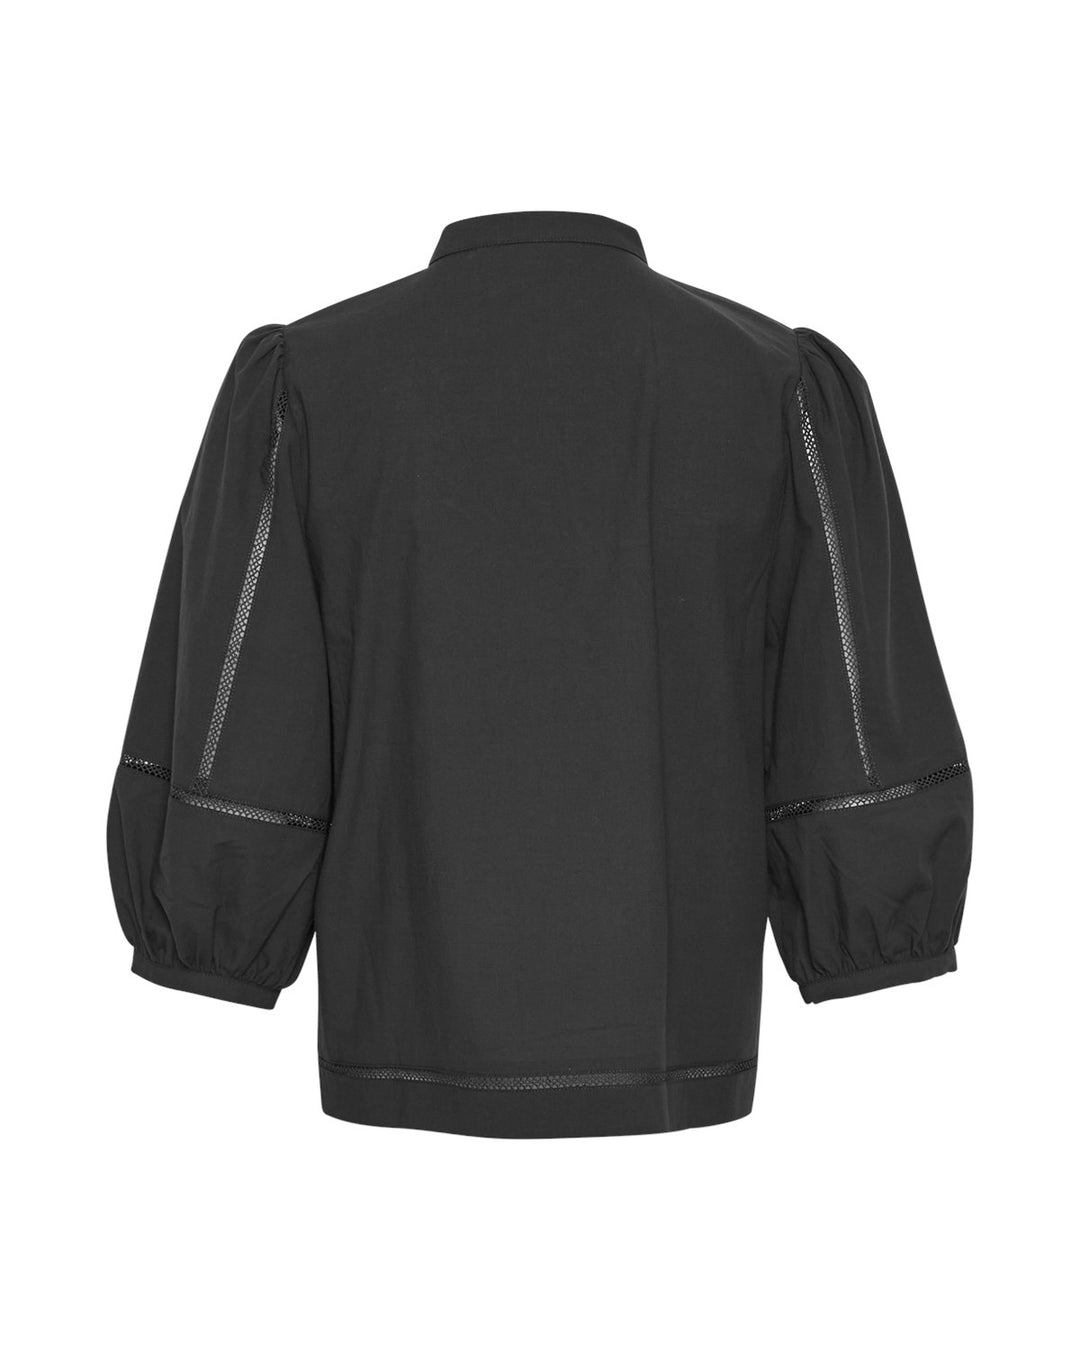 MSCHErendia 2/4 Shirt  Black